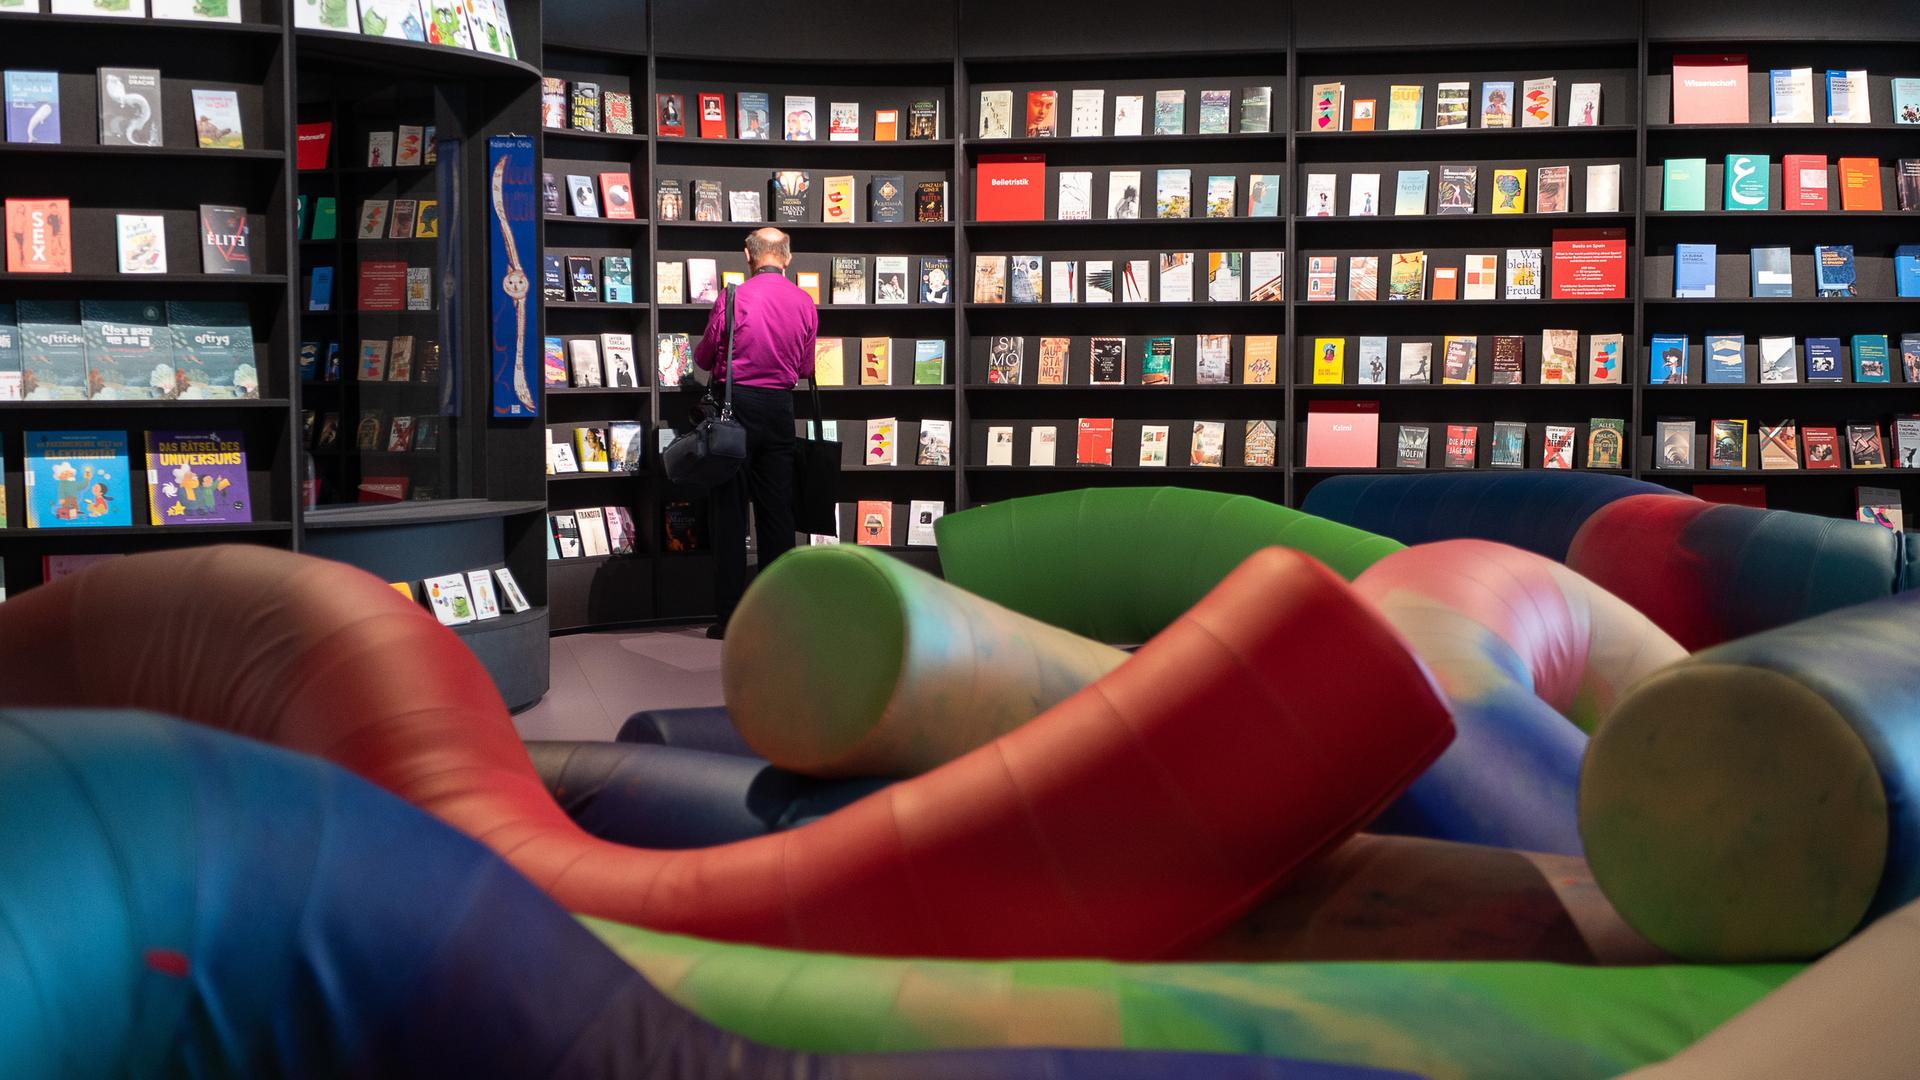 Ein Besucher steht im Pavillon des Ehrengastes Spanien der Frankfurter Buchmesse vor einer Bücherwand. Die Buchmesse wird am 18. Oktober eröffnet und findet dann vom 19. bis zum 23. Oktober statt. Ehrengast 2022 ist Spanien.